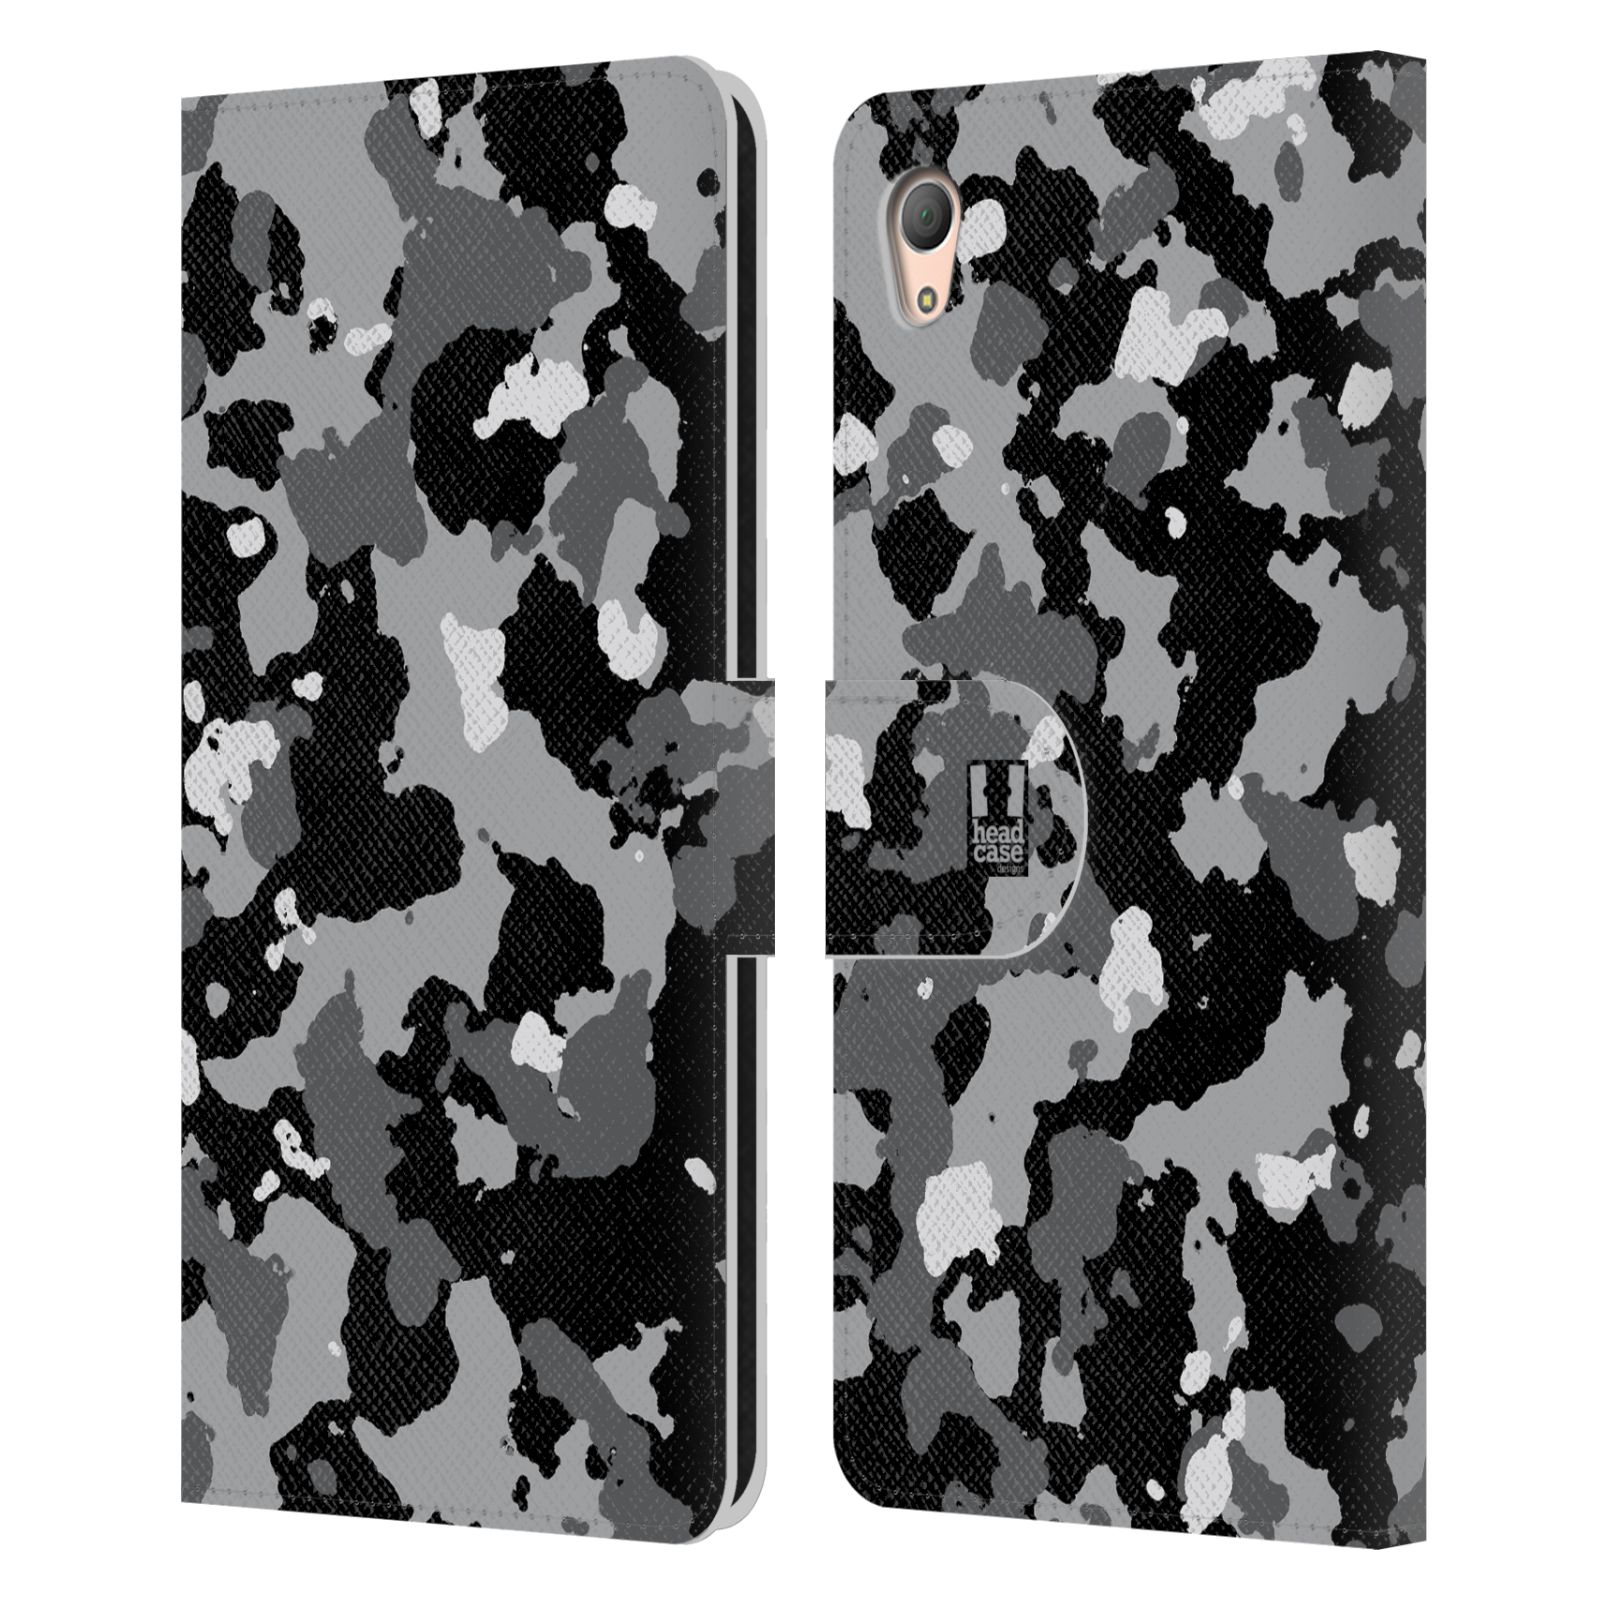 Pouzdro na mobil Sony Xperia Z3 PLUS - Head Case - kamuflaž černá a šedá